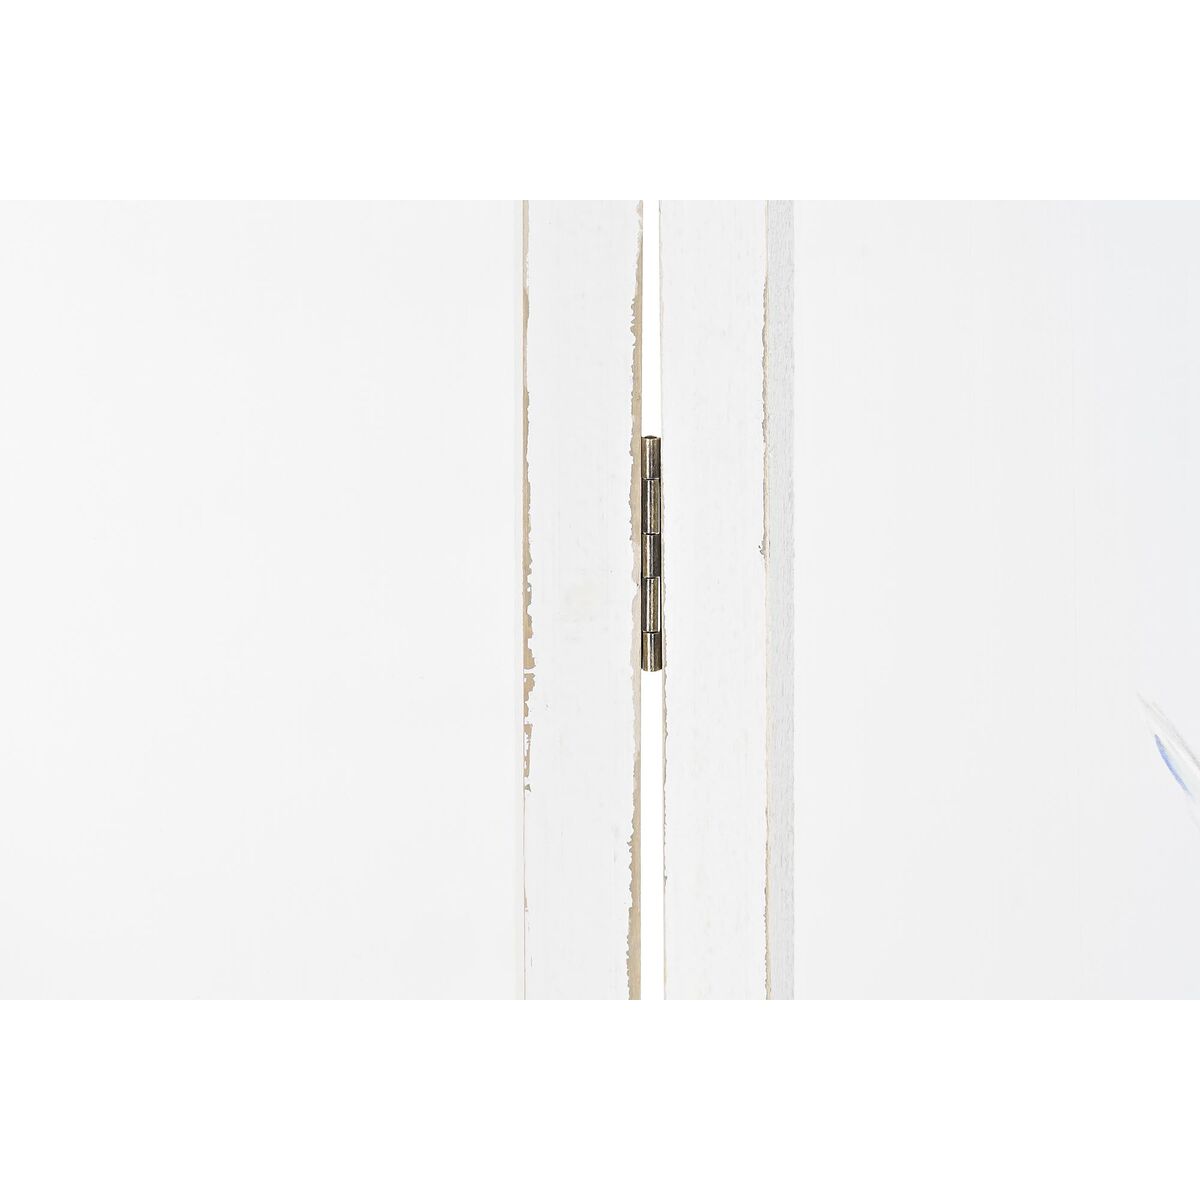 Biombo Diseño Pájaro Tropical Blanco Decoración Hogar Madera y Nylon (150 x 2 x 180 cm) 